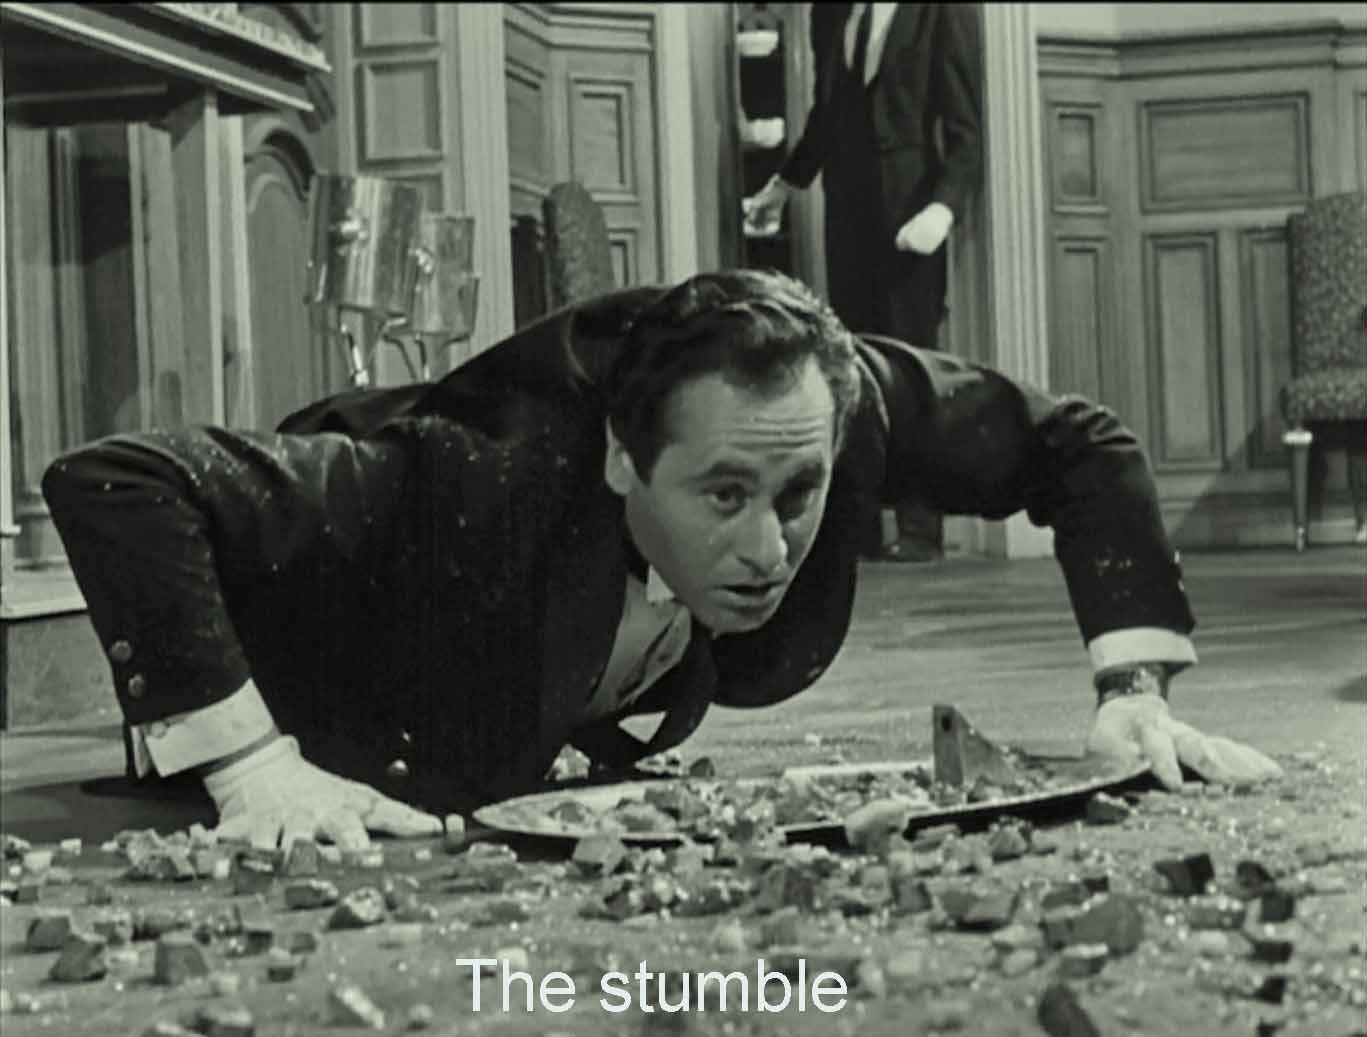 The stumble